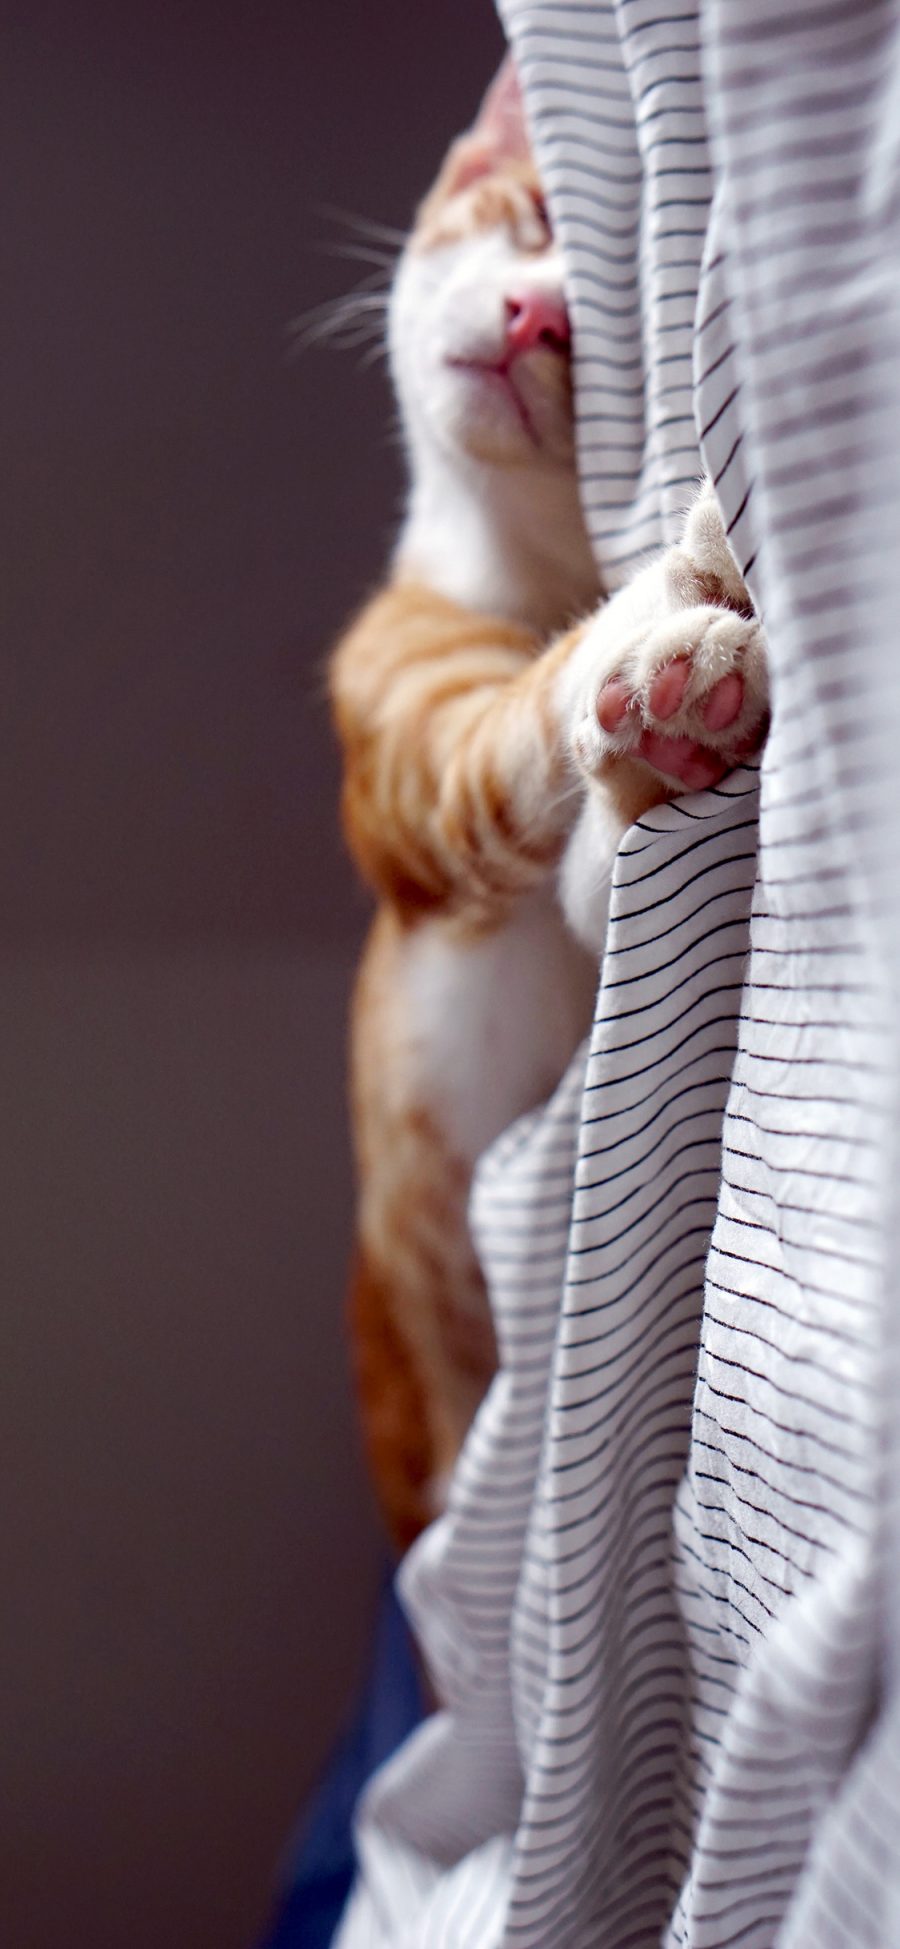 [2436×1125]喵星人 宠物猫 睡觉 可爱 苹果手机壁纸图片